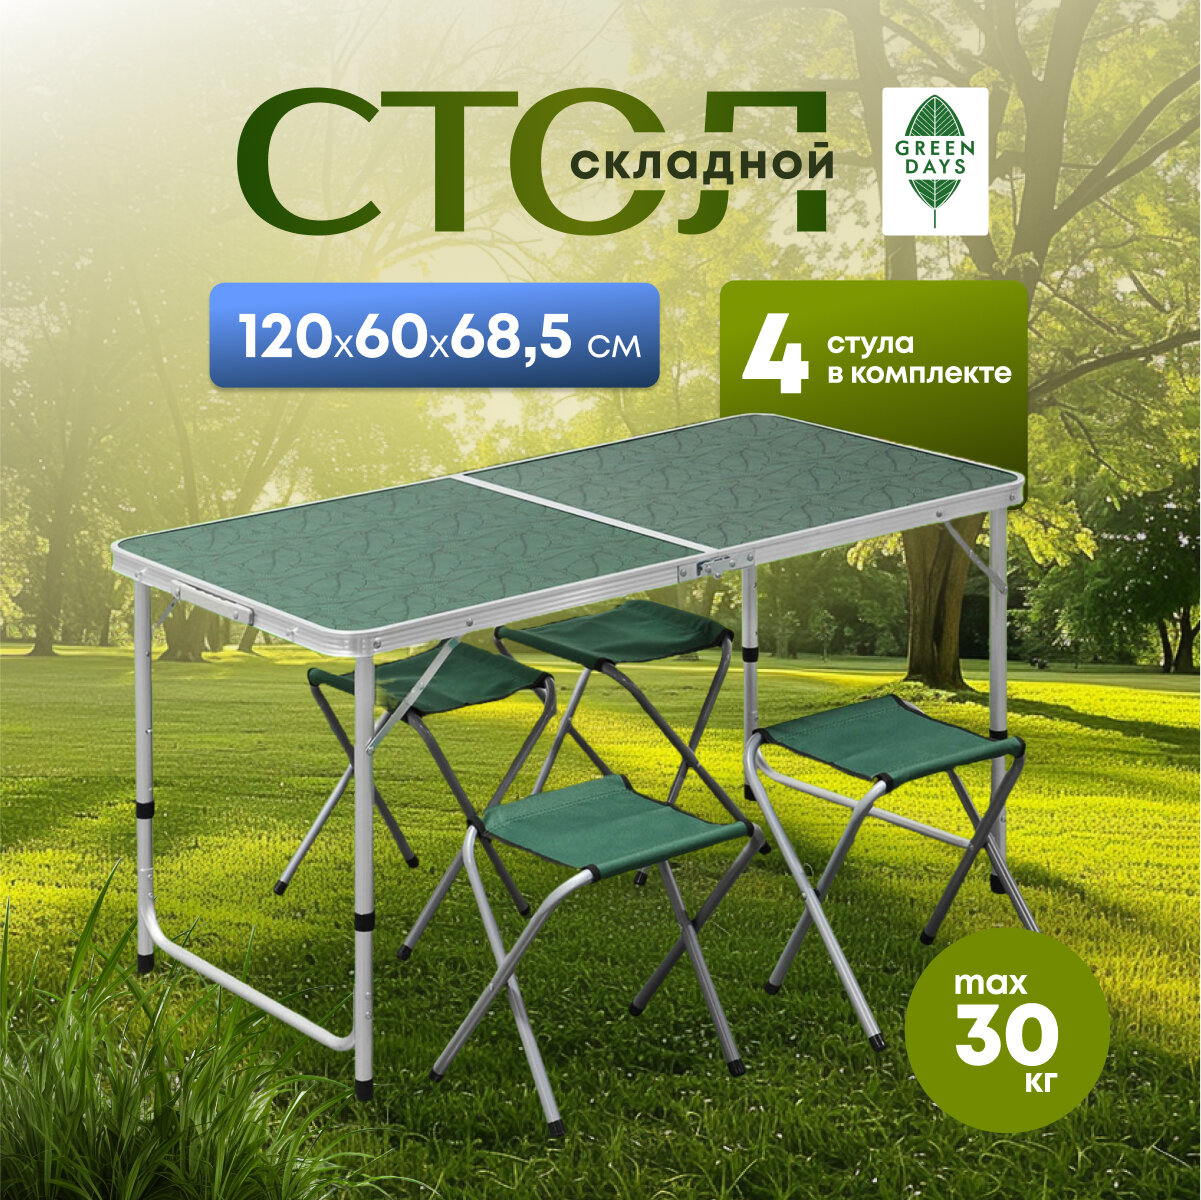 Стол складной металл, прямоугольный, 120х60х68.5 см, столешница МДФ, зеленый, Green Days, 4 стула